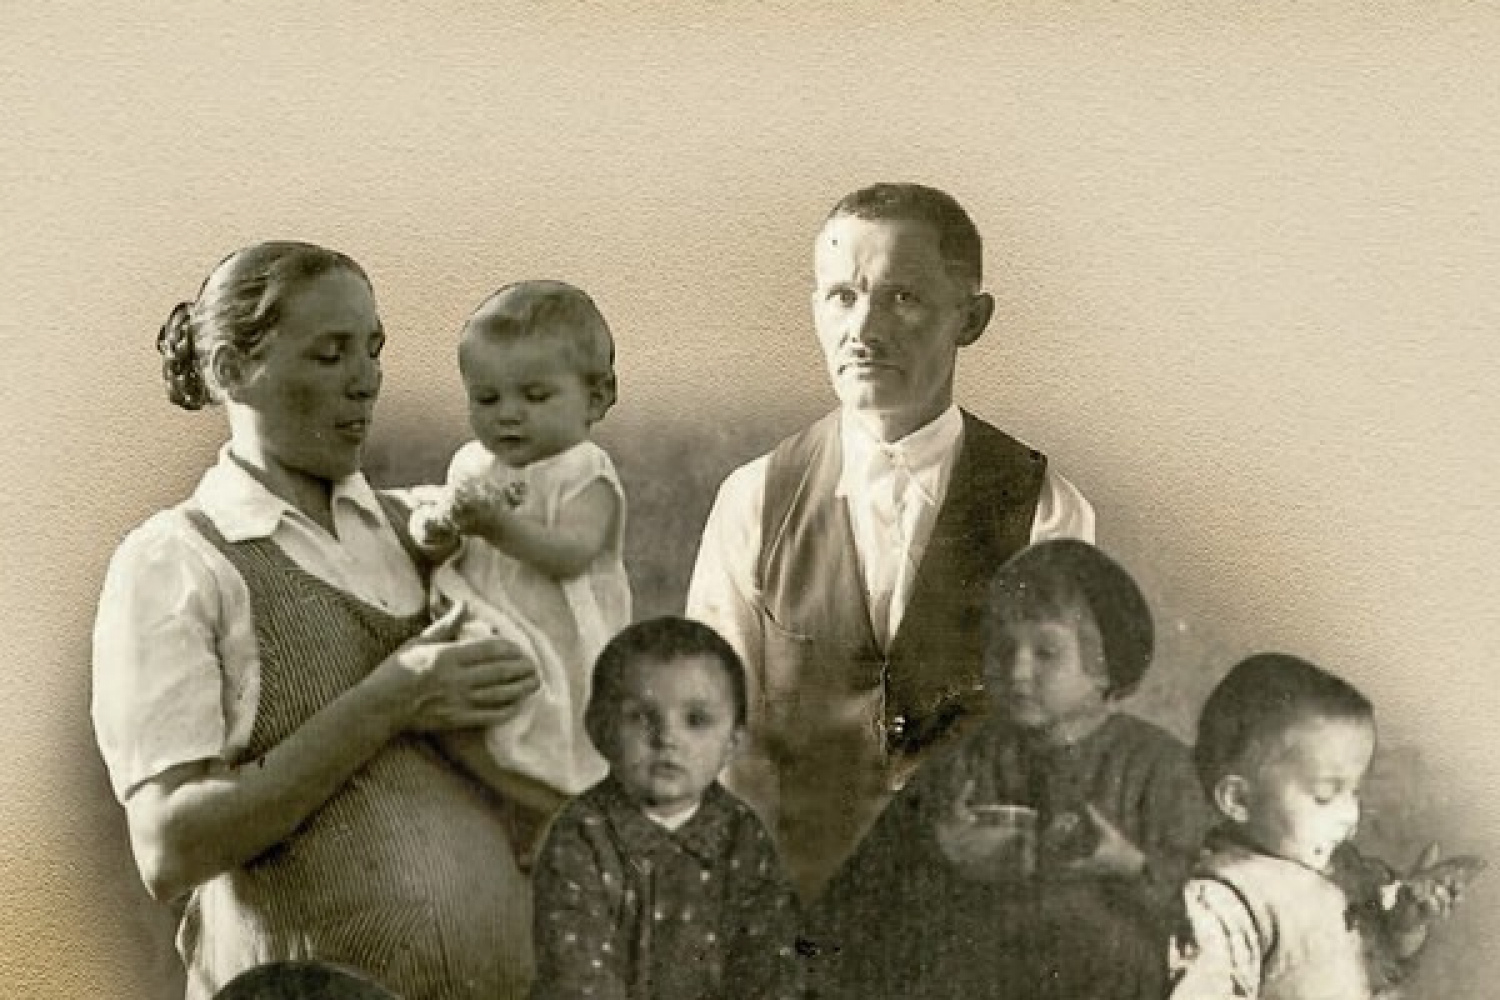 Впервые в истории блаженной признают всю семью вместе с нерожденным ребенком. Как так – объяснил теолог